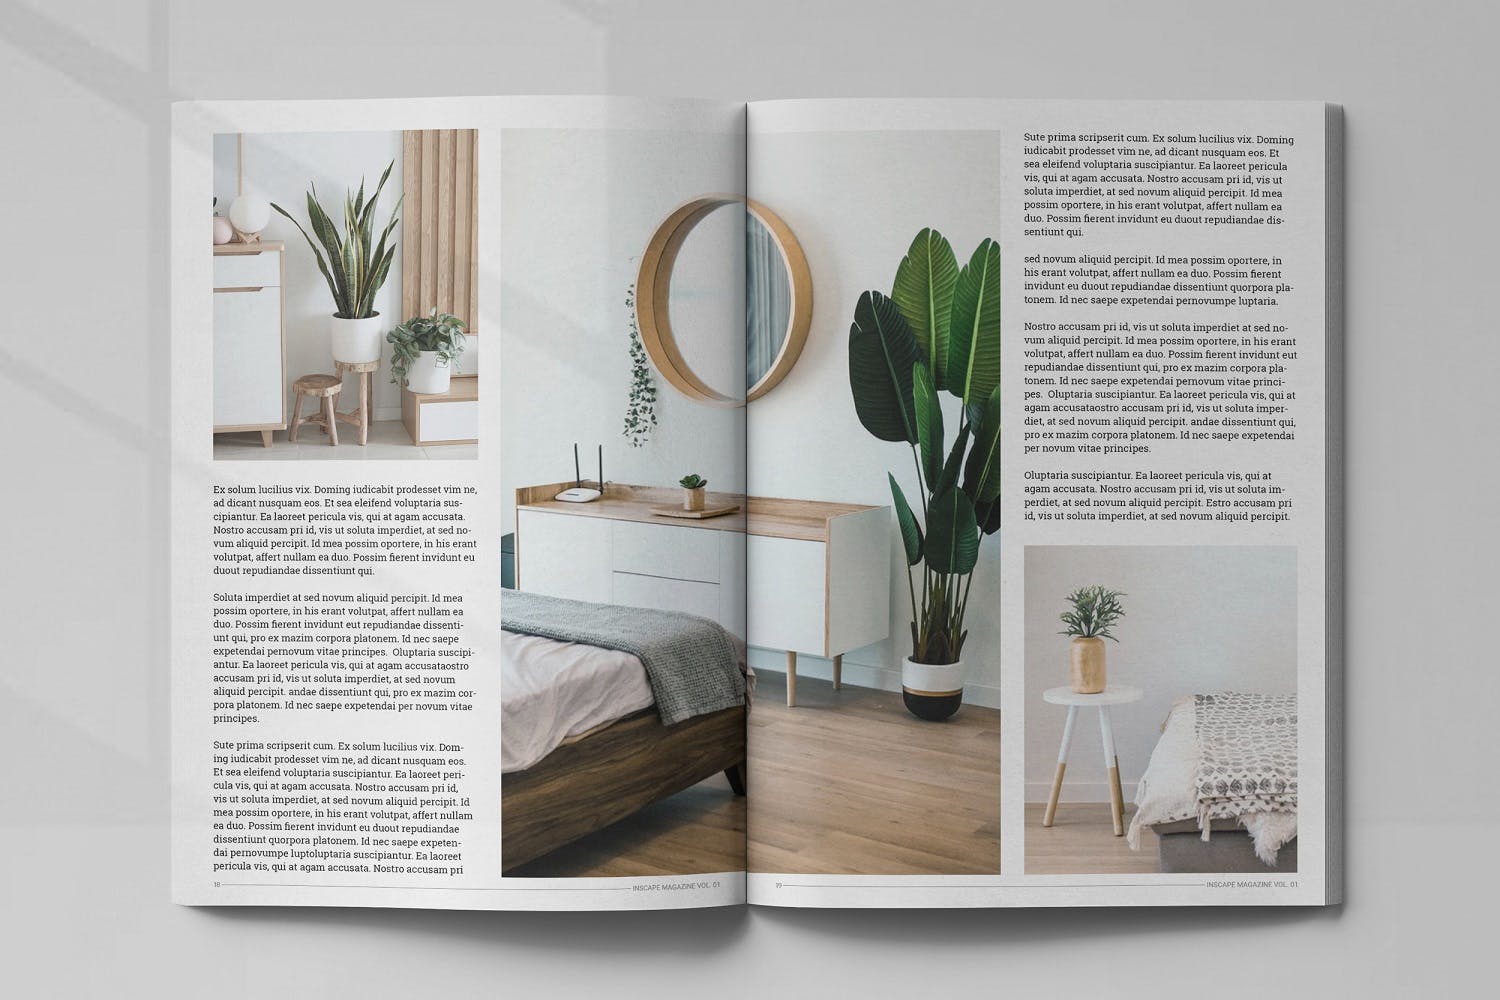 室内设计主题素材中国精选杂志排版设计模板 Inscape Interior Magazine插图(9)